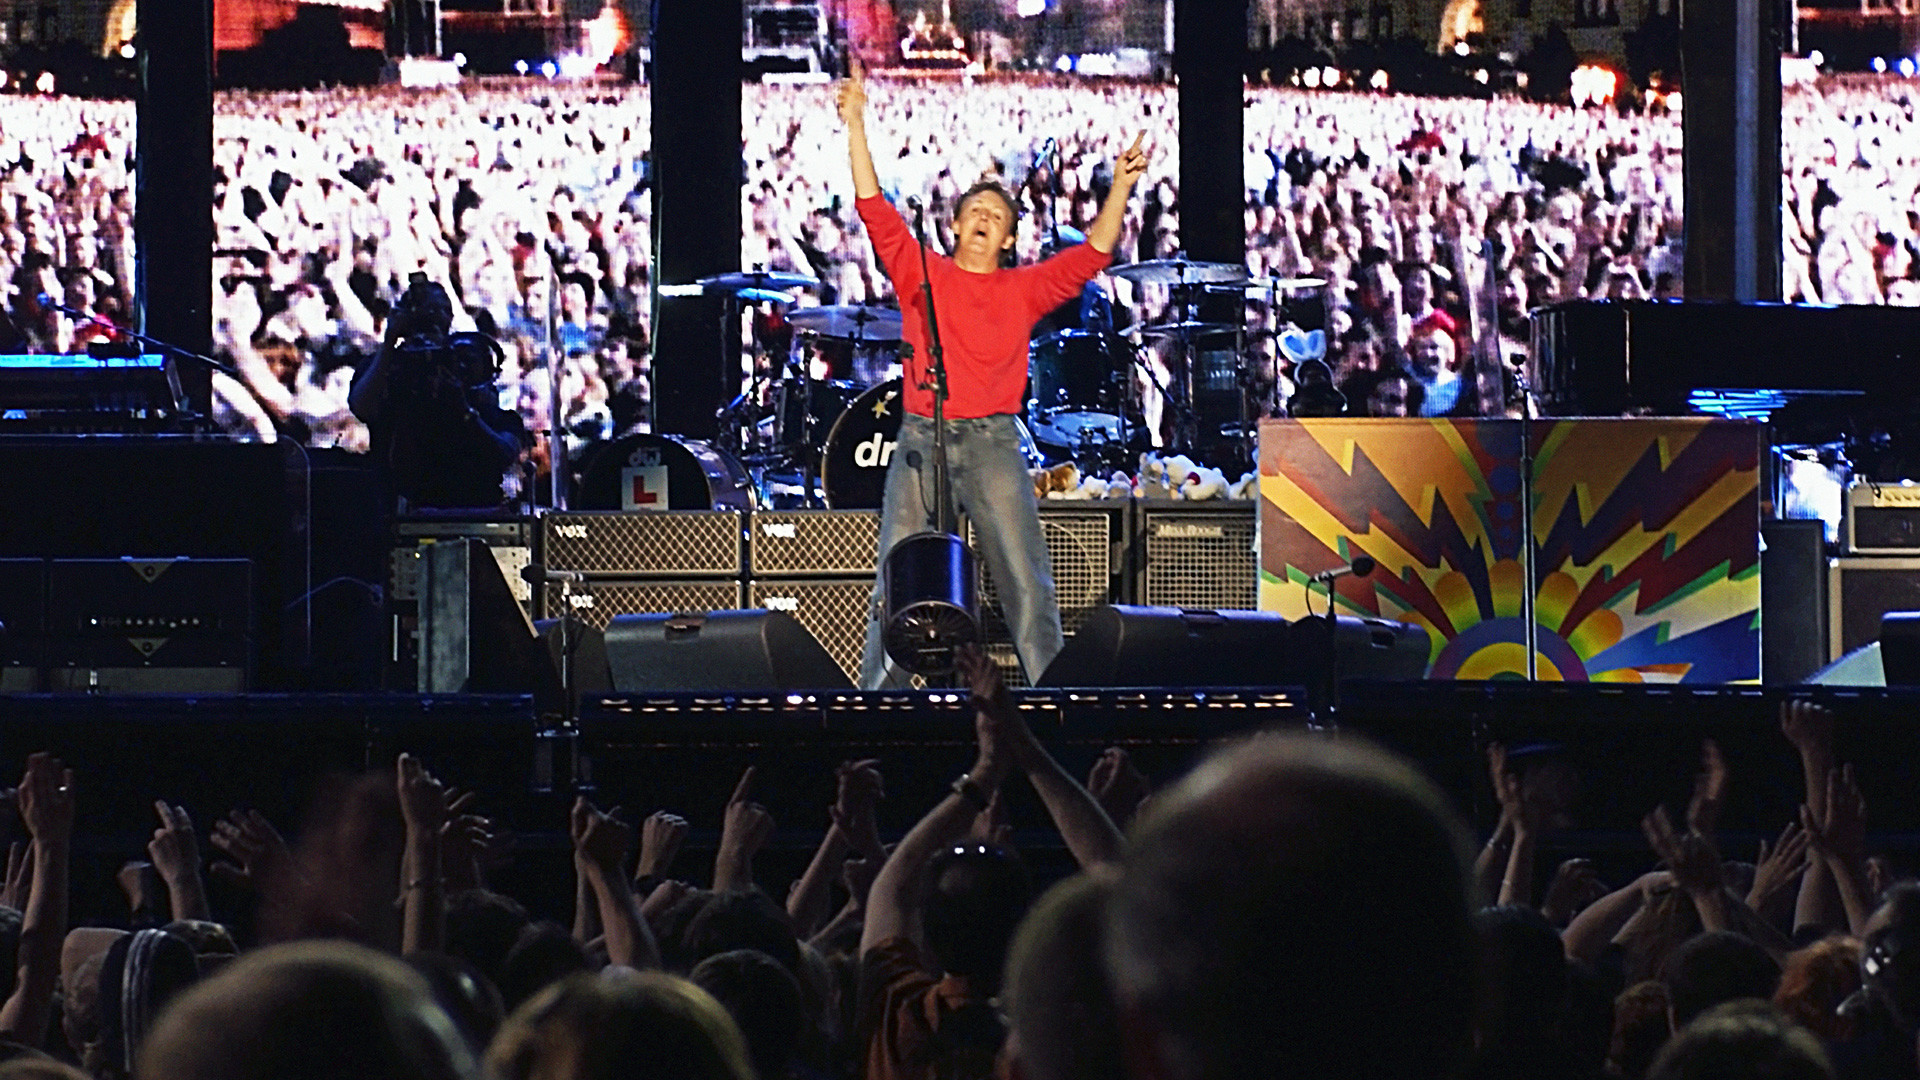 Prvi nastup Paula McCartneyja na moskovskom Crvenom trgu u njegovoj 40-godišnjoj karijeri 2003. godine.